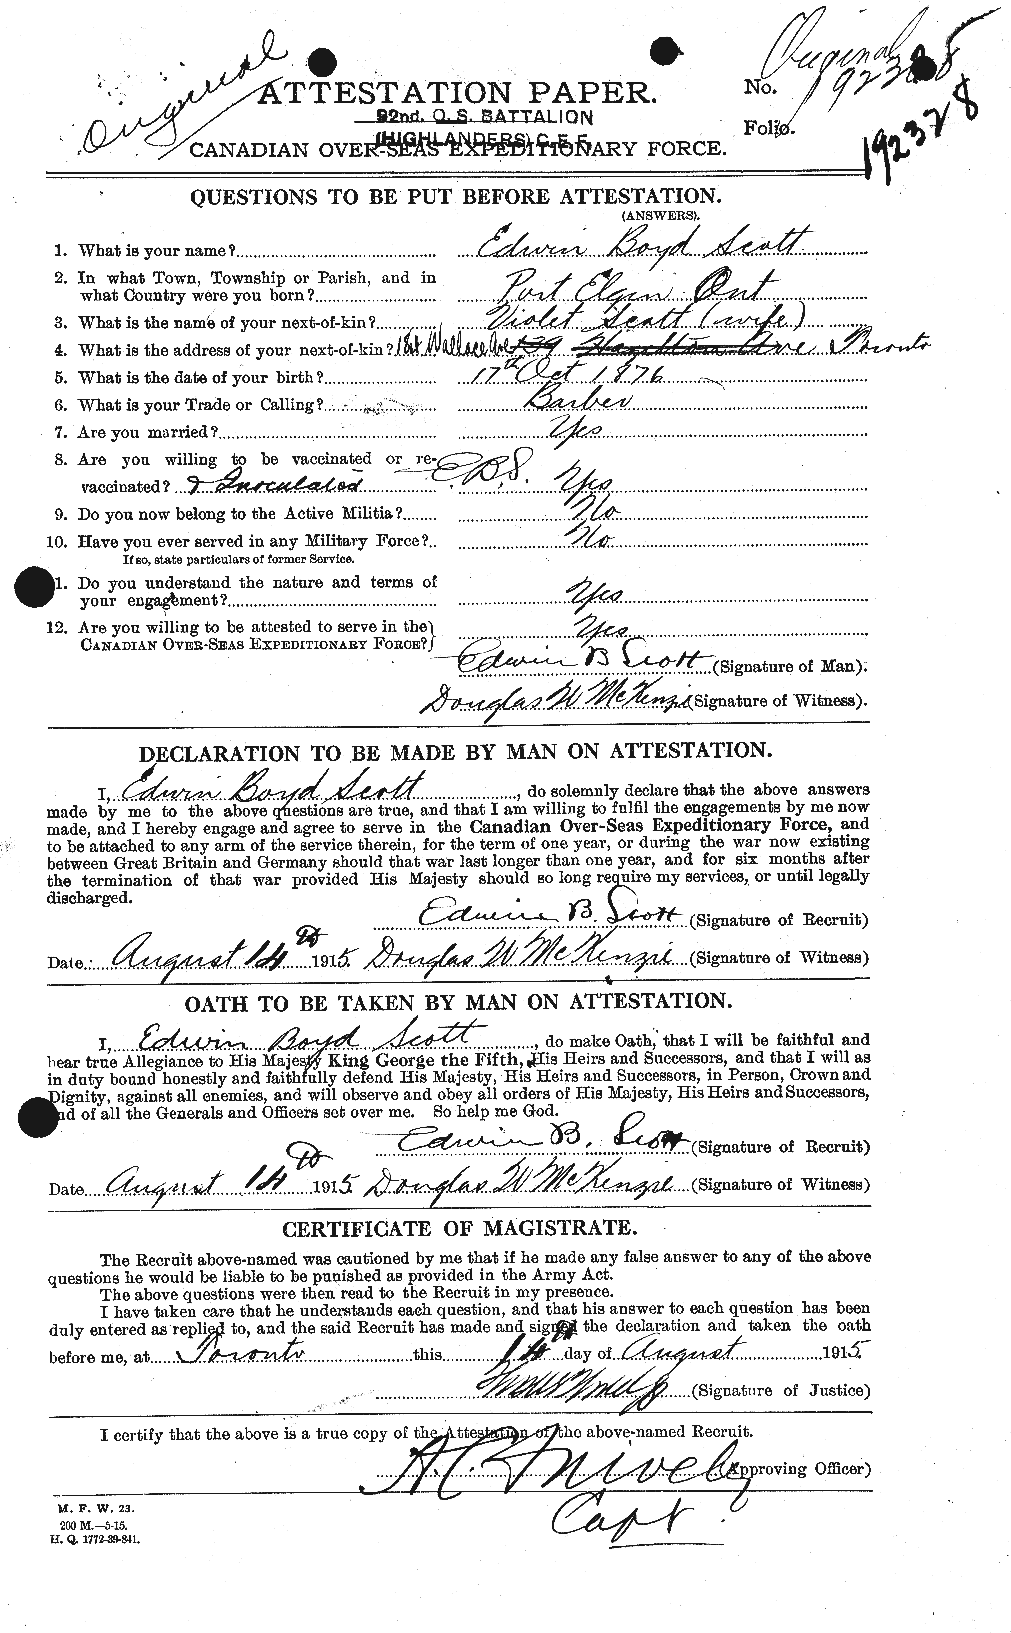 Dossiers du Personnel de la Première Guerre mondiale - CEC 085042a